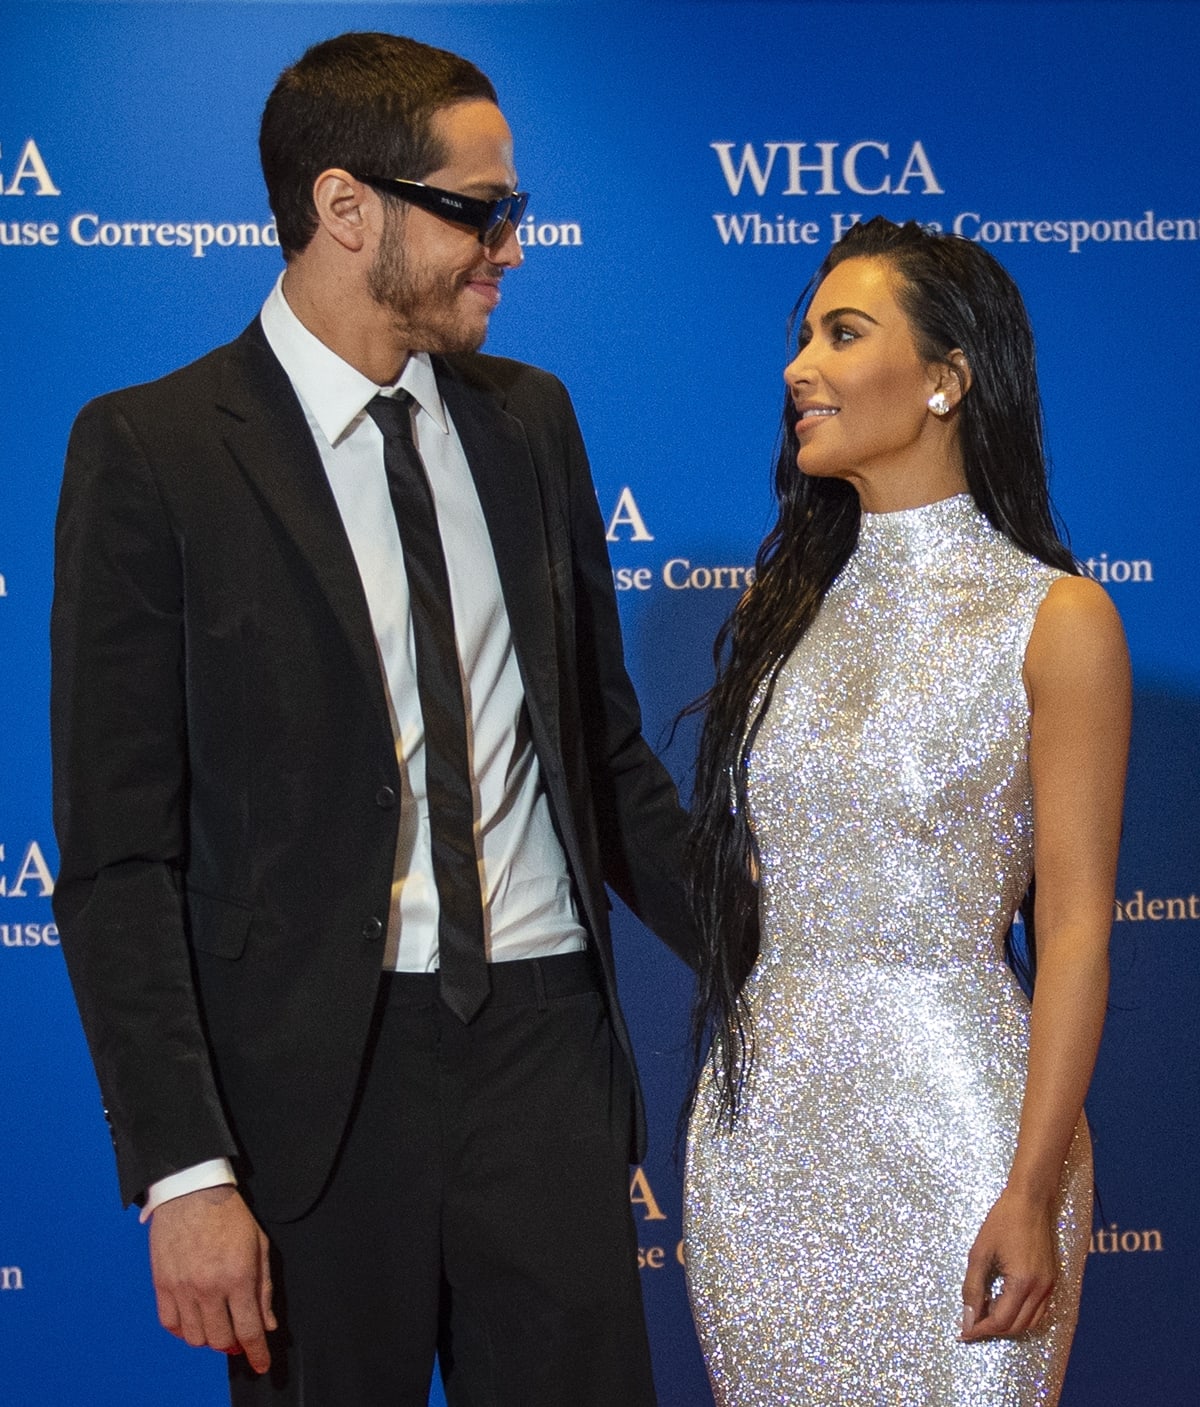 Kim Kardashian and Pete Davidson first met at the Met Gala in 2021